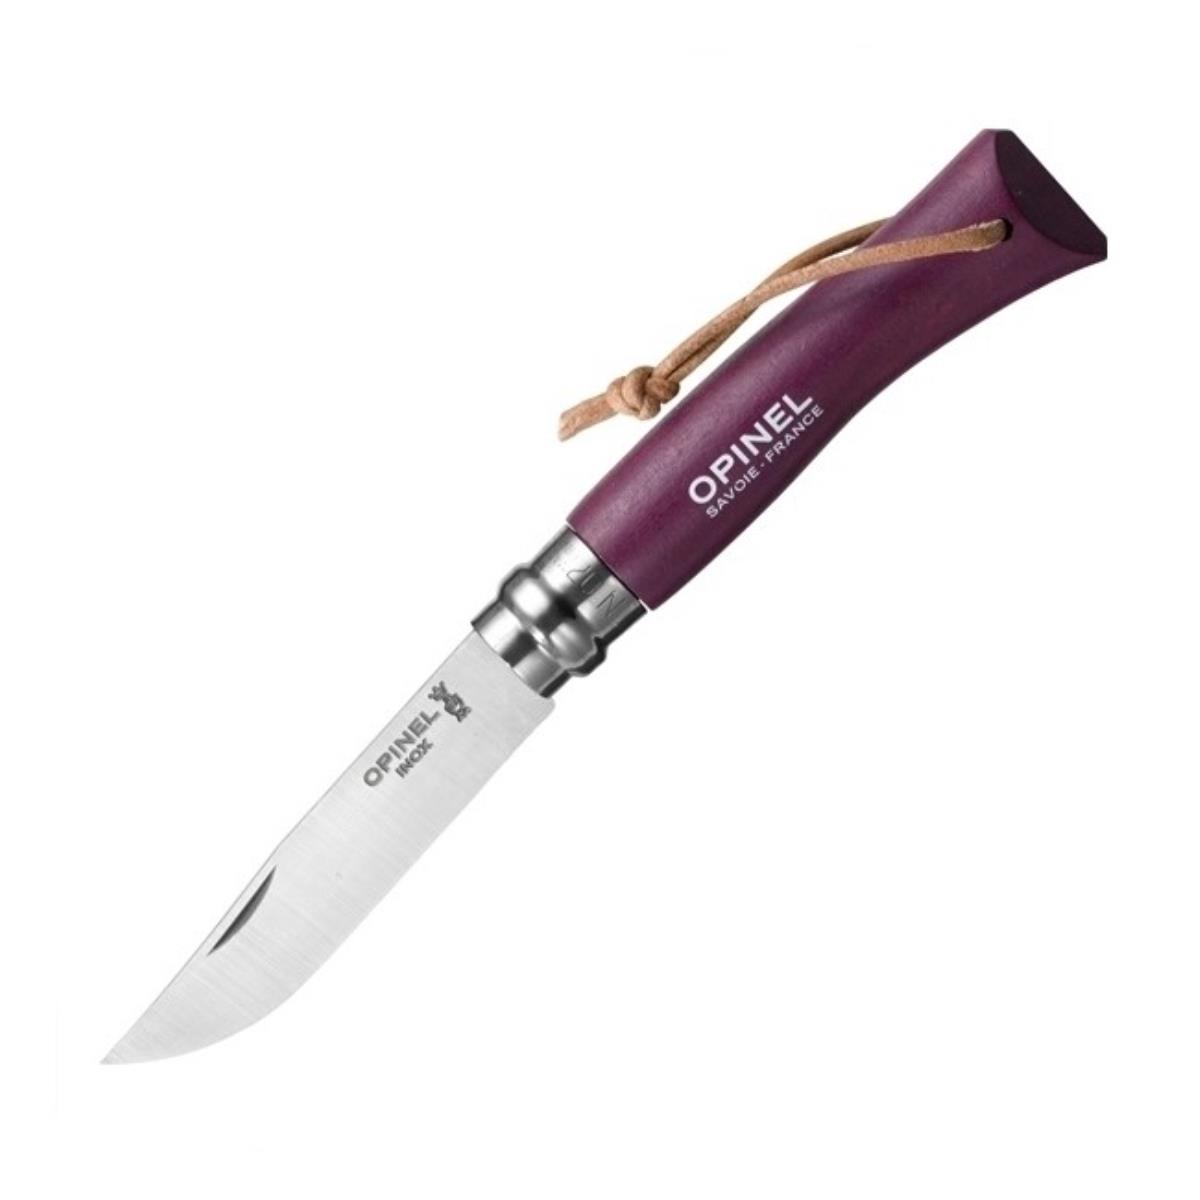 Нож №7 VRI Colored Tradition нерж. сталь, рукоять граб,  клинок 8см, темляк (слива) OPINEL доска разделочная для подачи с ручкой adelica 34×19 5×2 см тёмный граб